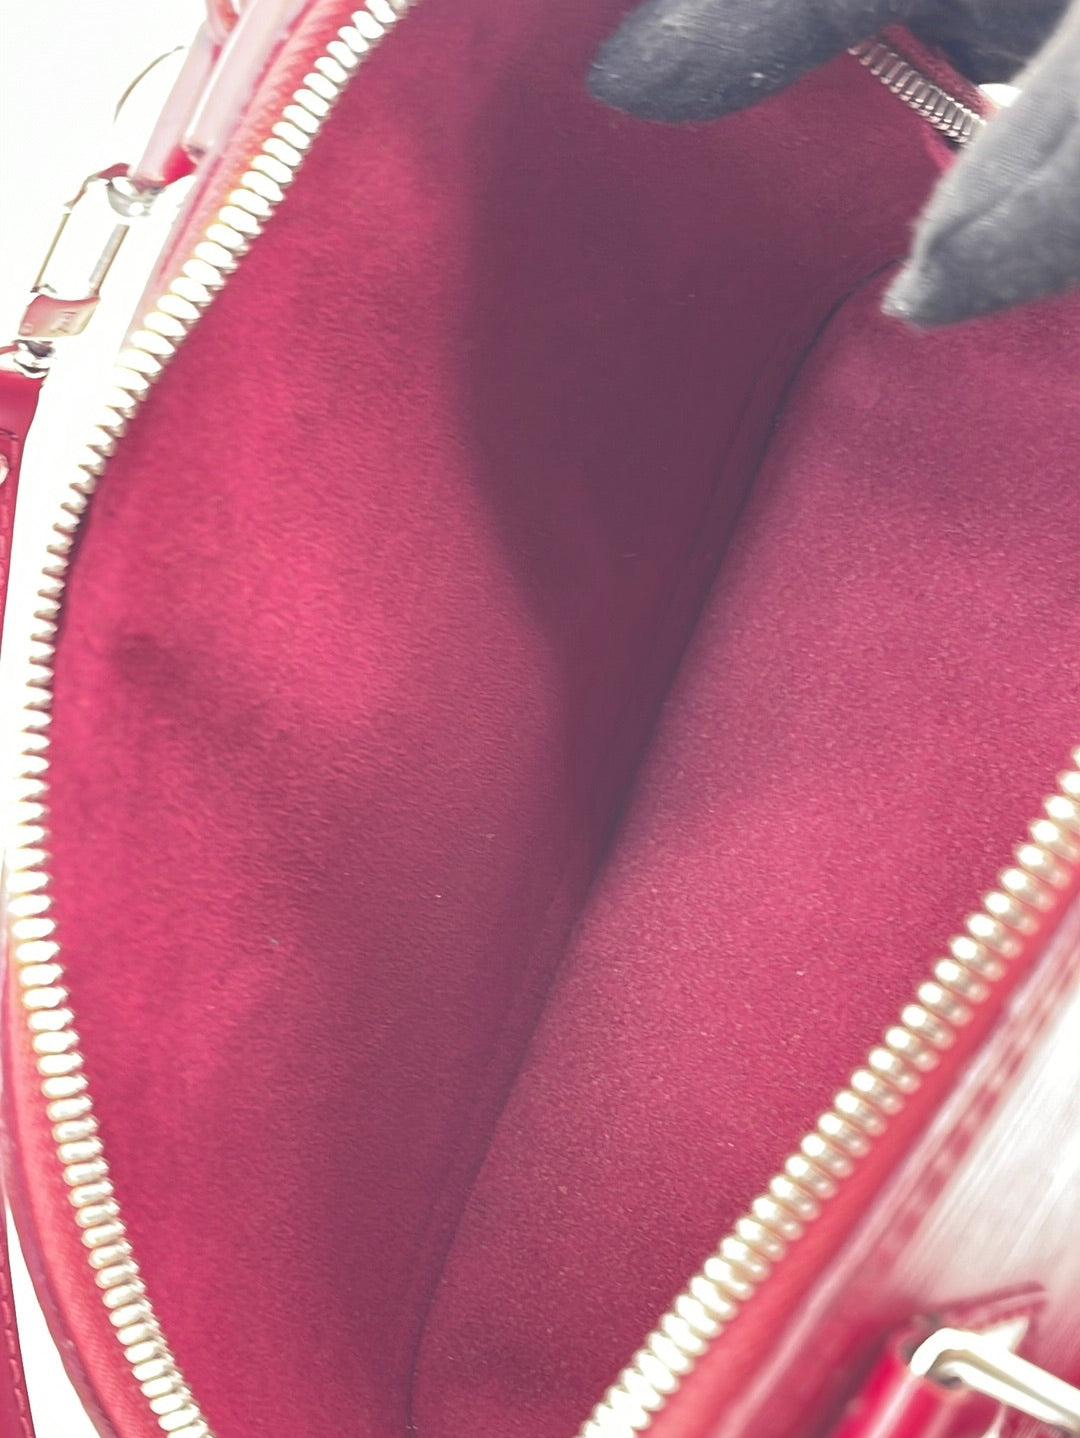 Louis Vuitton Epi Alma BB Rose Ballerine Crossbody Bag - ShopperBoard